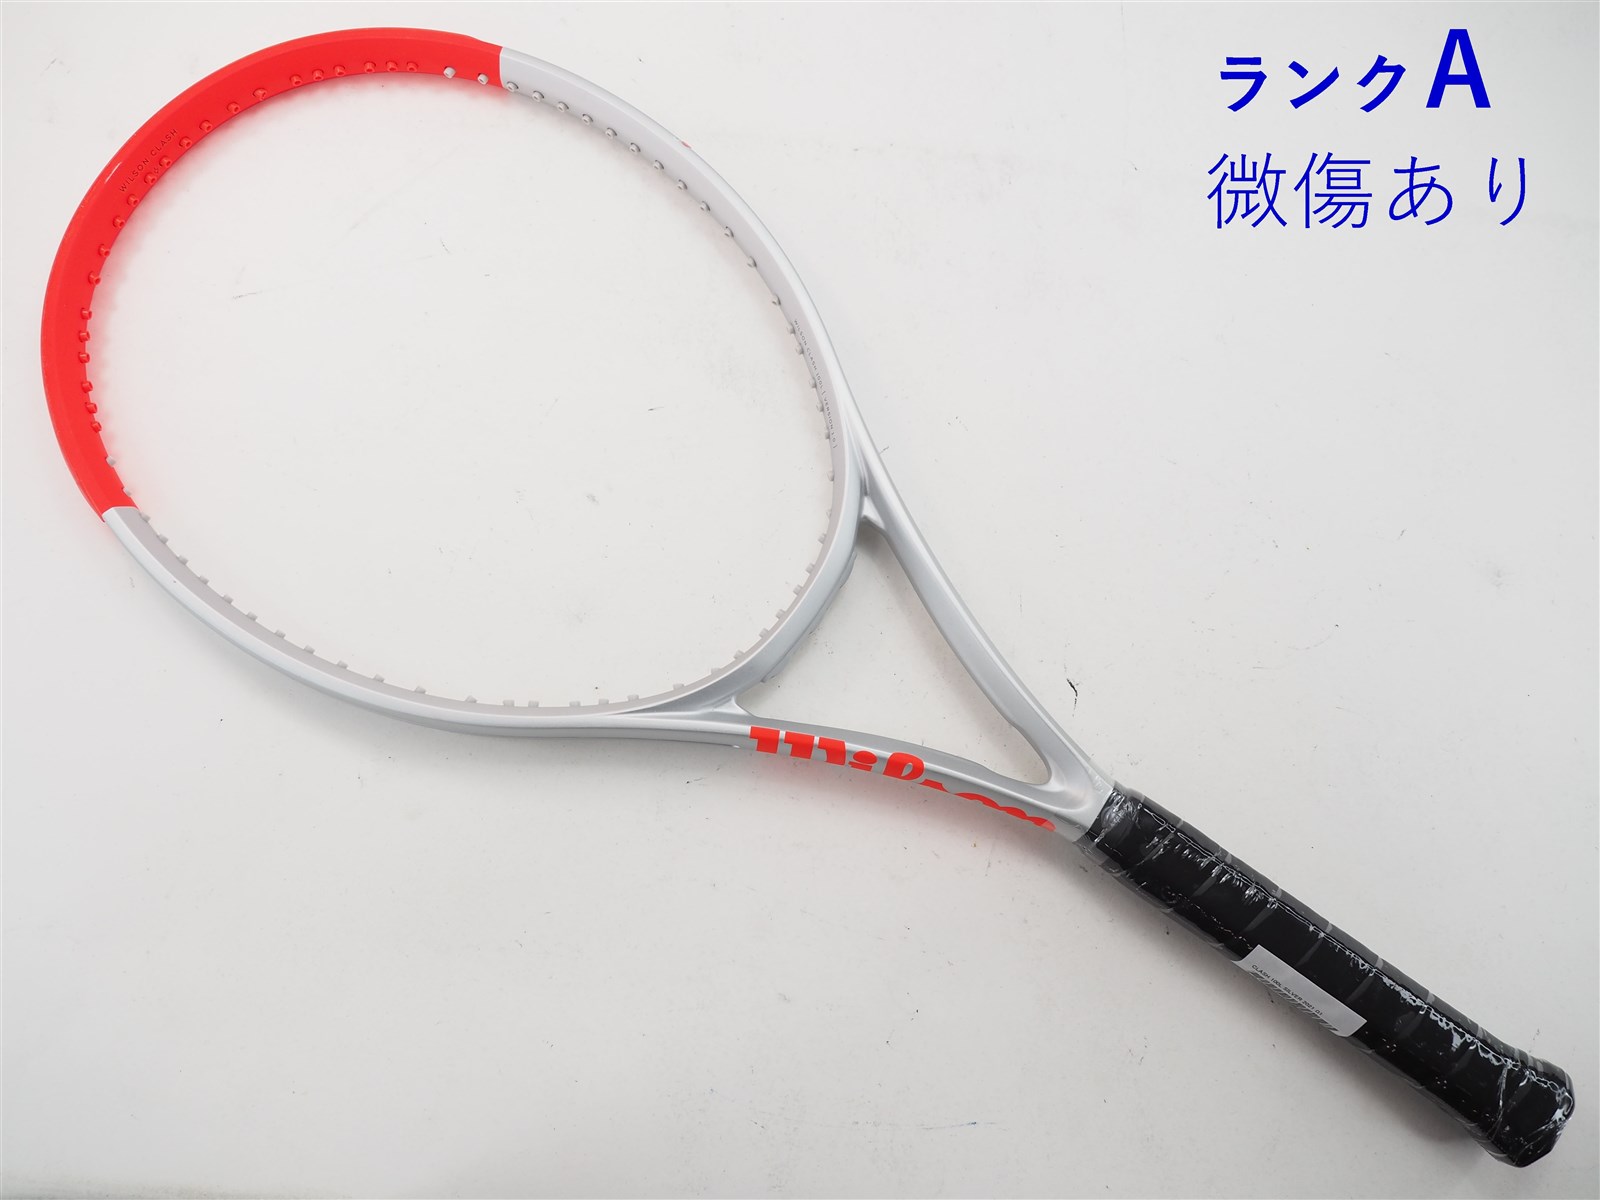 テニスラケット ウィルソン クラッシュ 100エル シルバー 2021年モデル